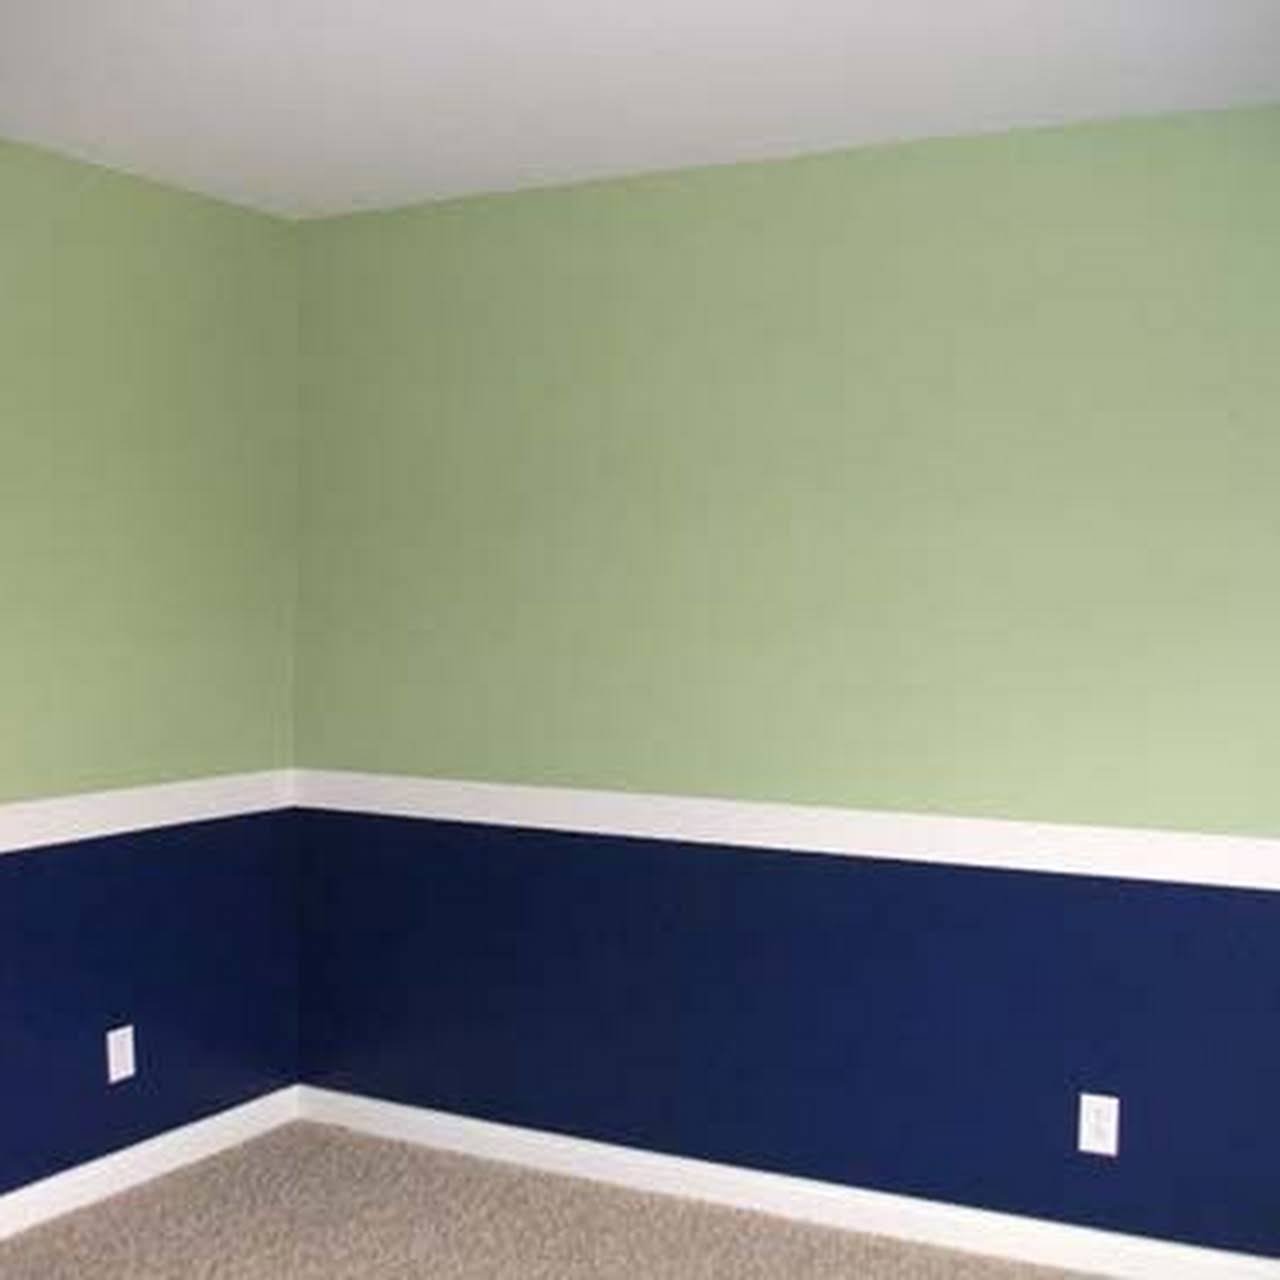 окраска стен в квартире фото примеров